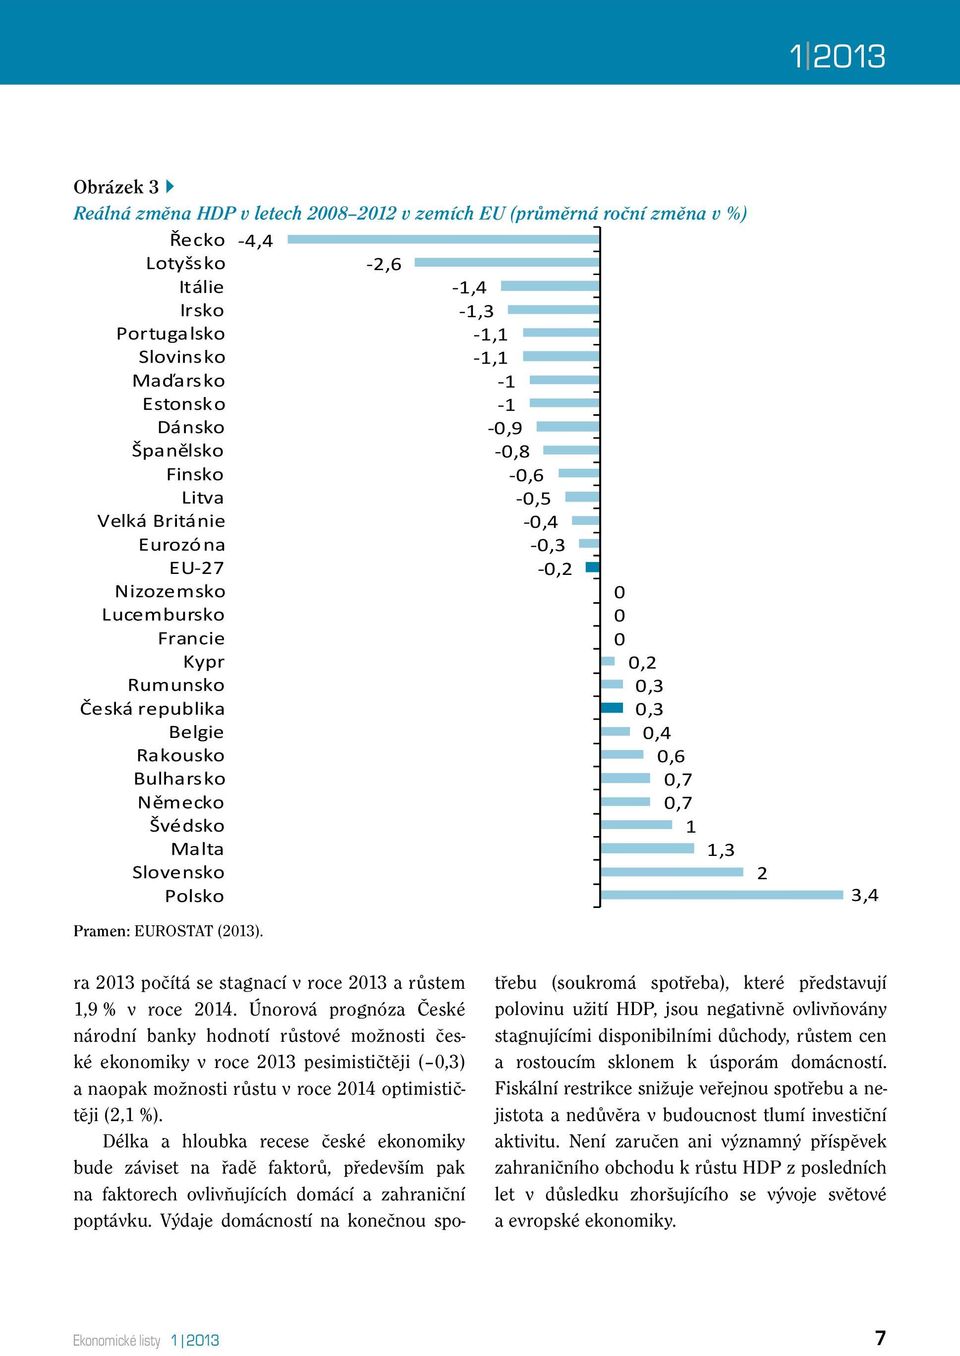 Bulharsko 0,7 Německo 0,7 Švédsko 1 Malta 1,3 Slovensko Polsko Pramen: EUROSTAT (2013). 2 3,4 ra 2013 počítá se stagnací v roce 2013 a růstem 1,9 % v roce 2014.